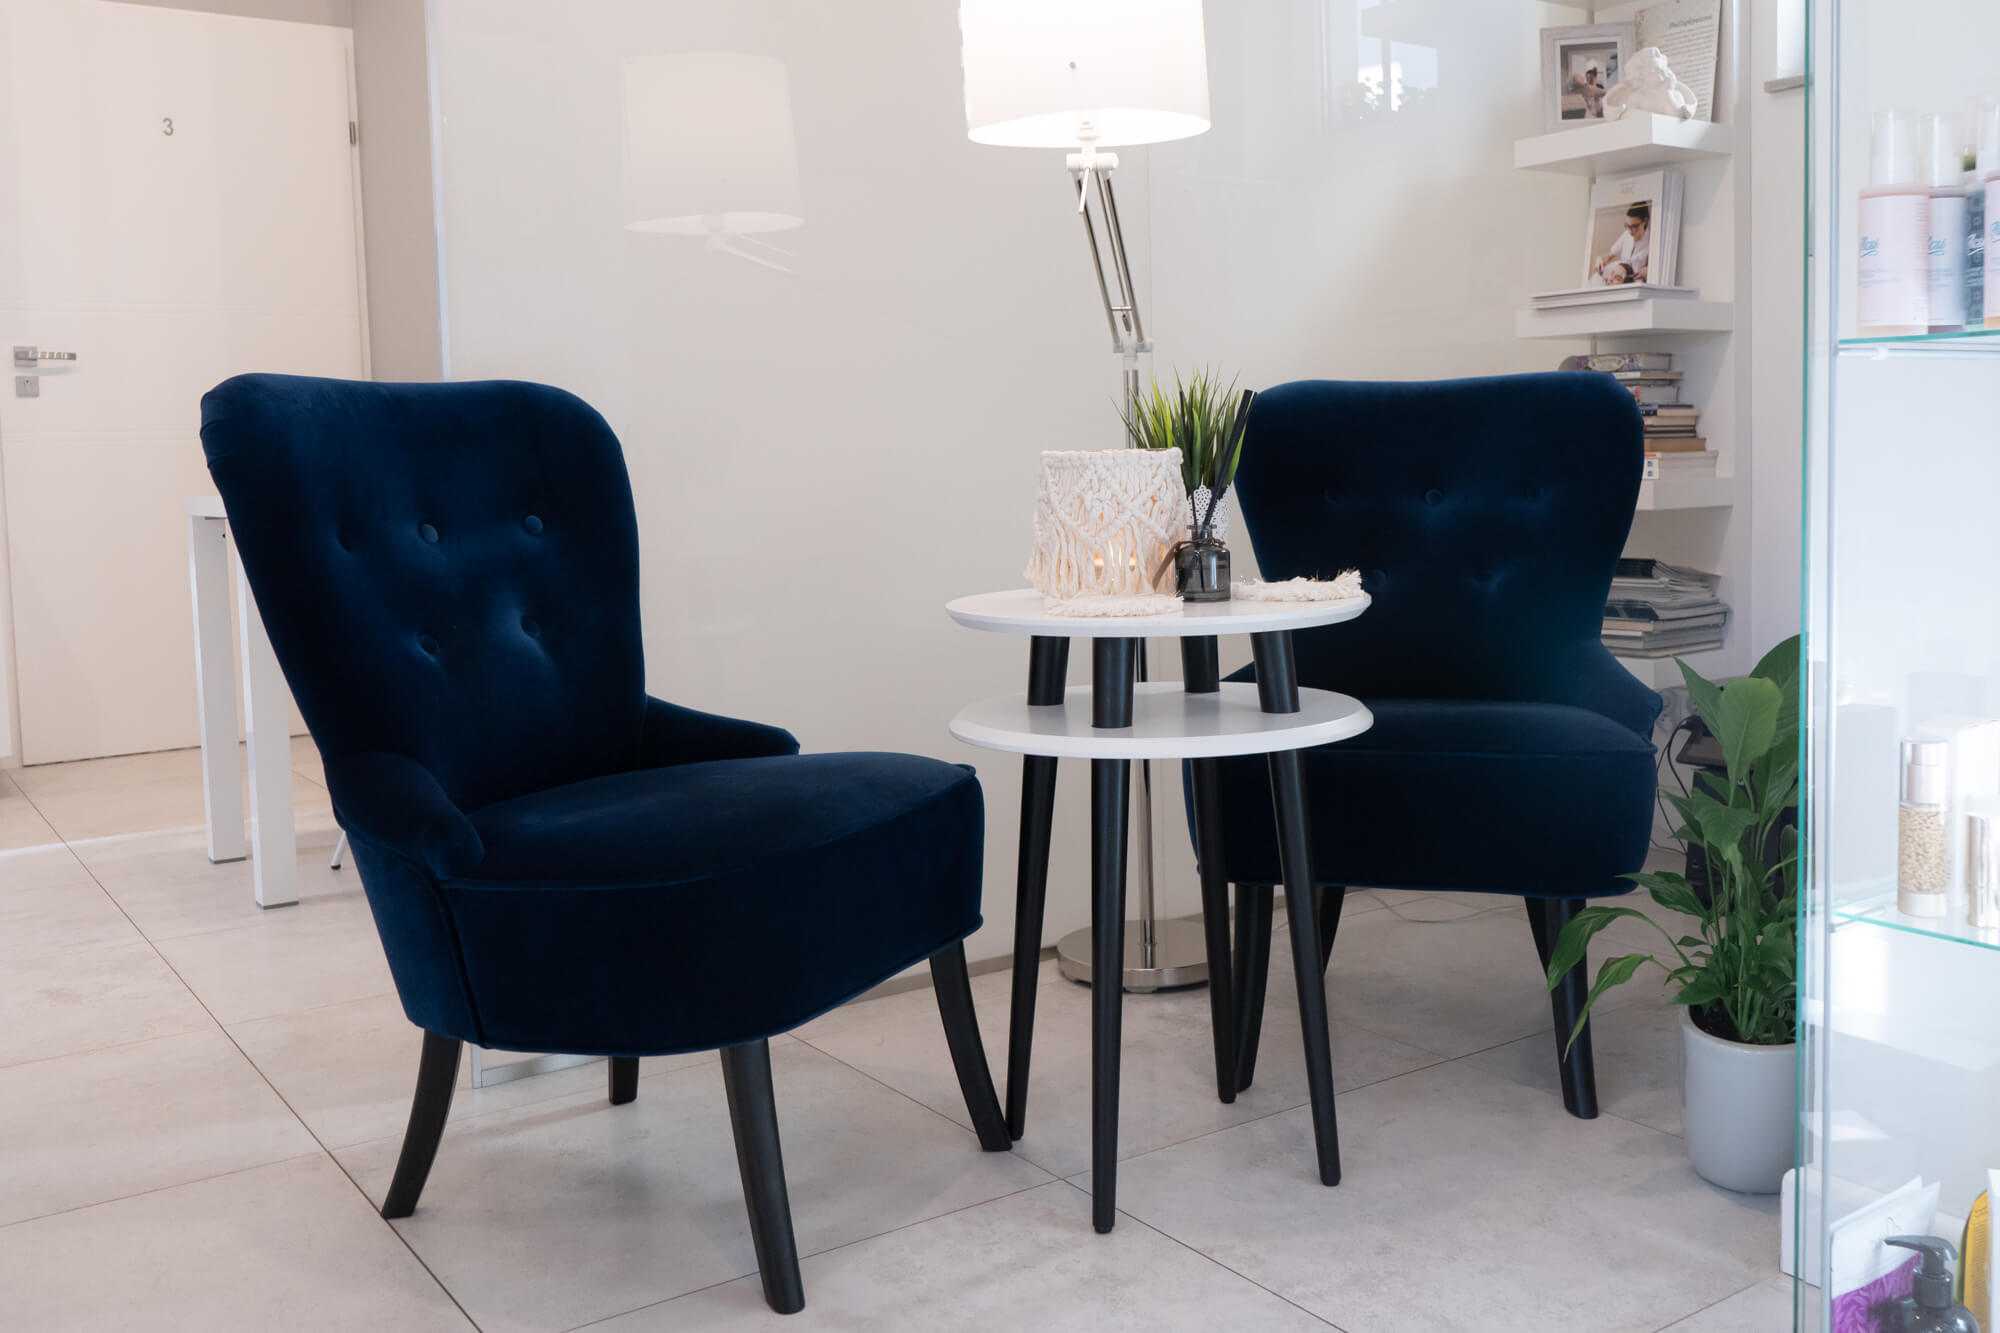 Poczekalnia w Salonie Kosmetycznym „Evita” z granatowymi fotelami, stolikiem kawowym, kwiatami i półką z magazynami